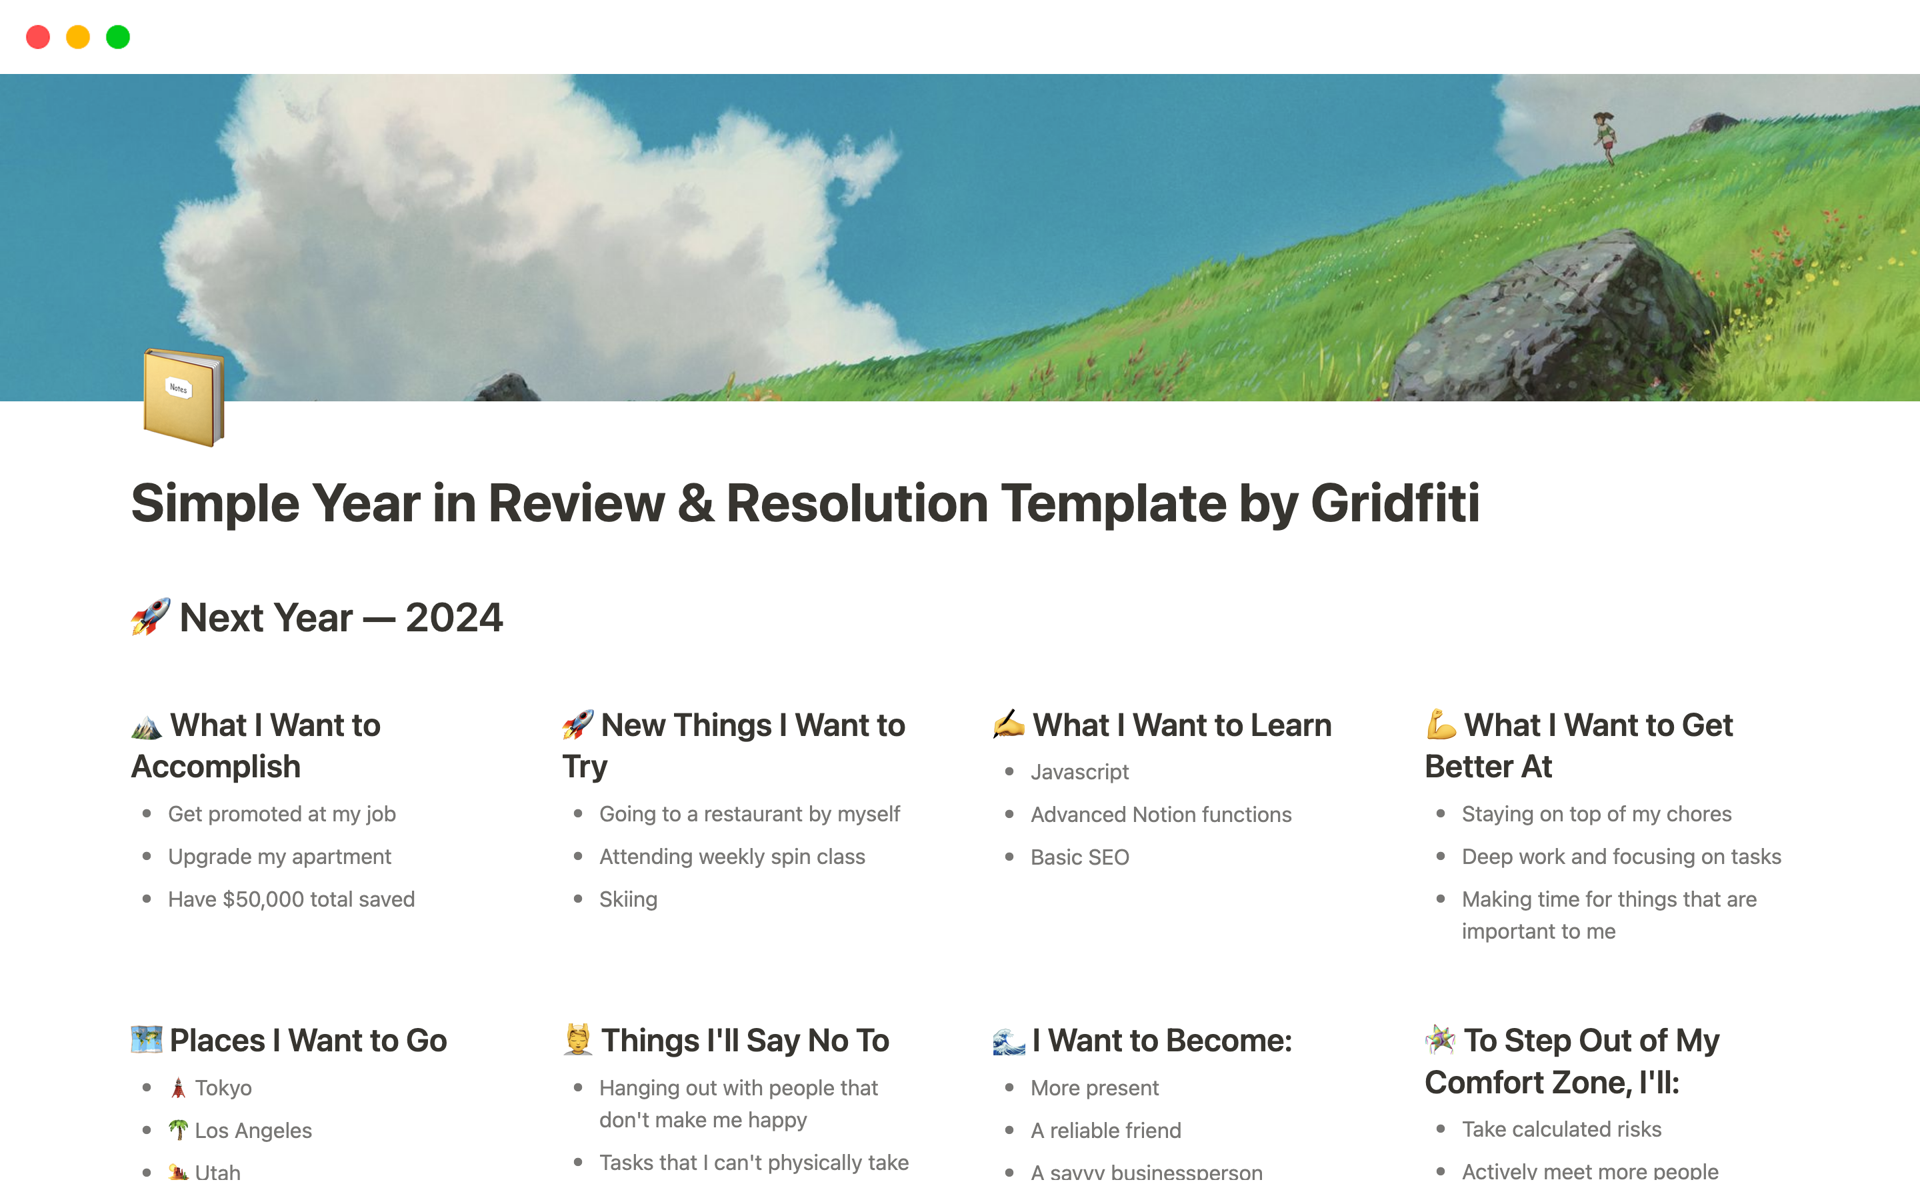 Vista previa de una plantilla para Simple Year in Review & Resolution Template